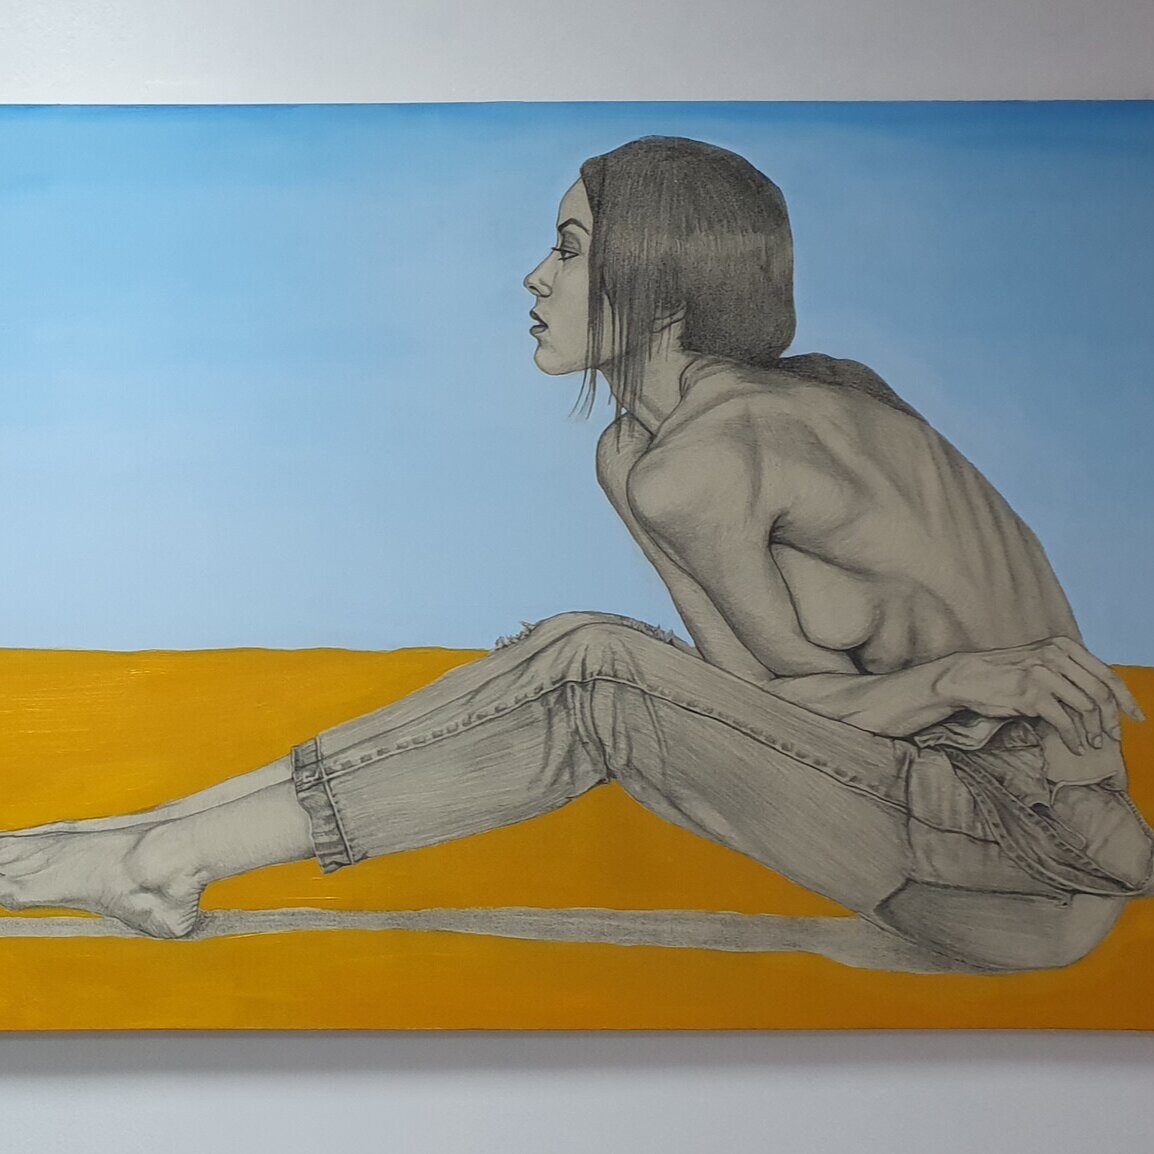    David Mendoza       Contemplación   , 2019 Grafito y acrílico sobre tela  260 x 80 cm Fixed Project Lima 